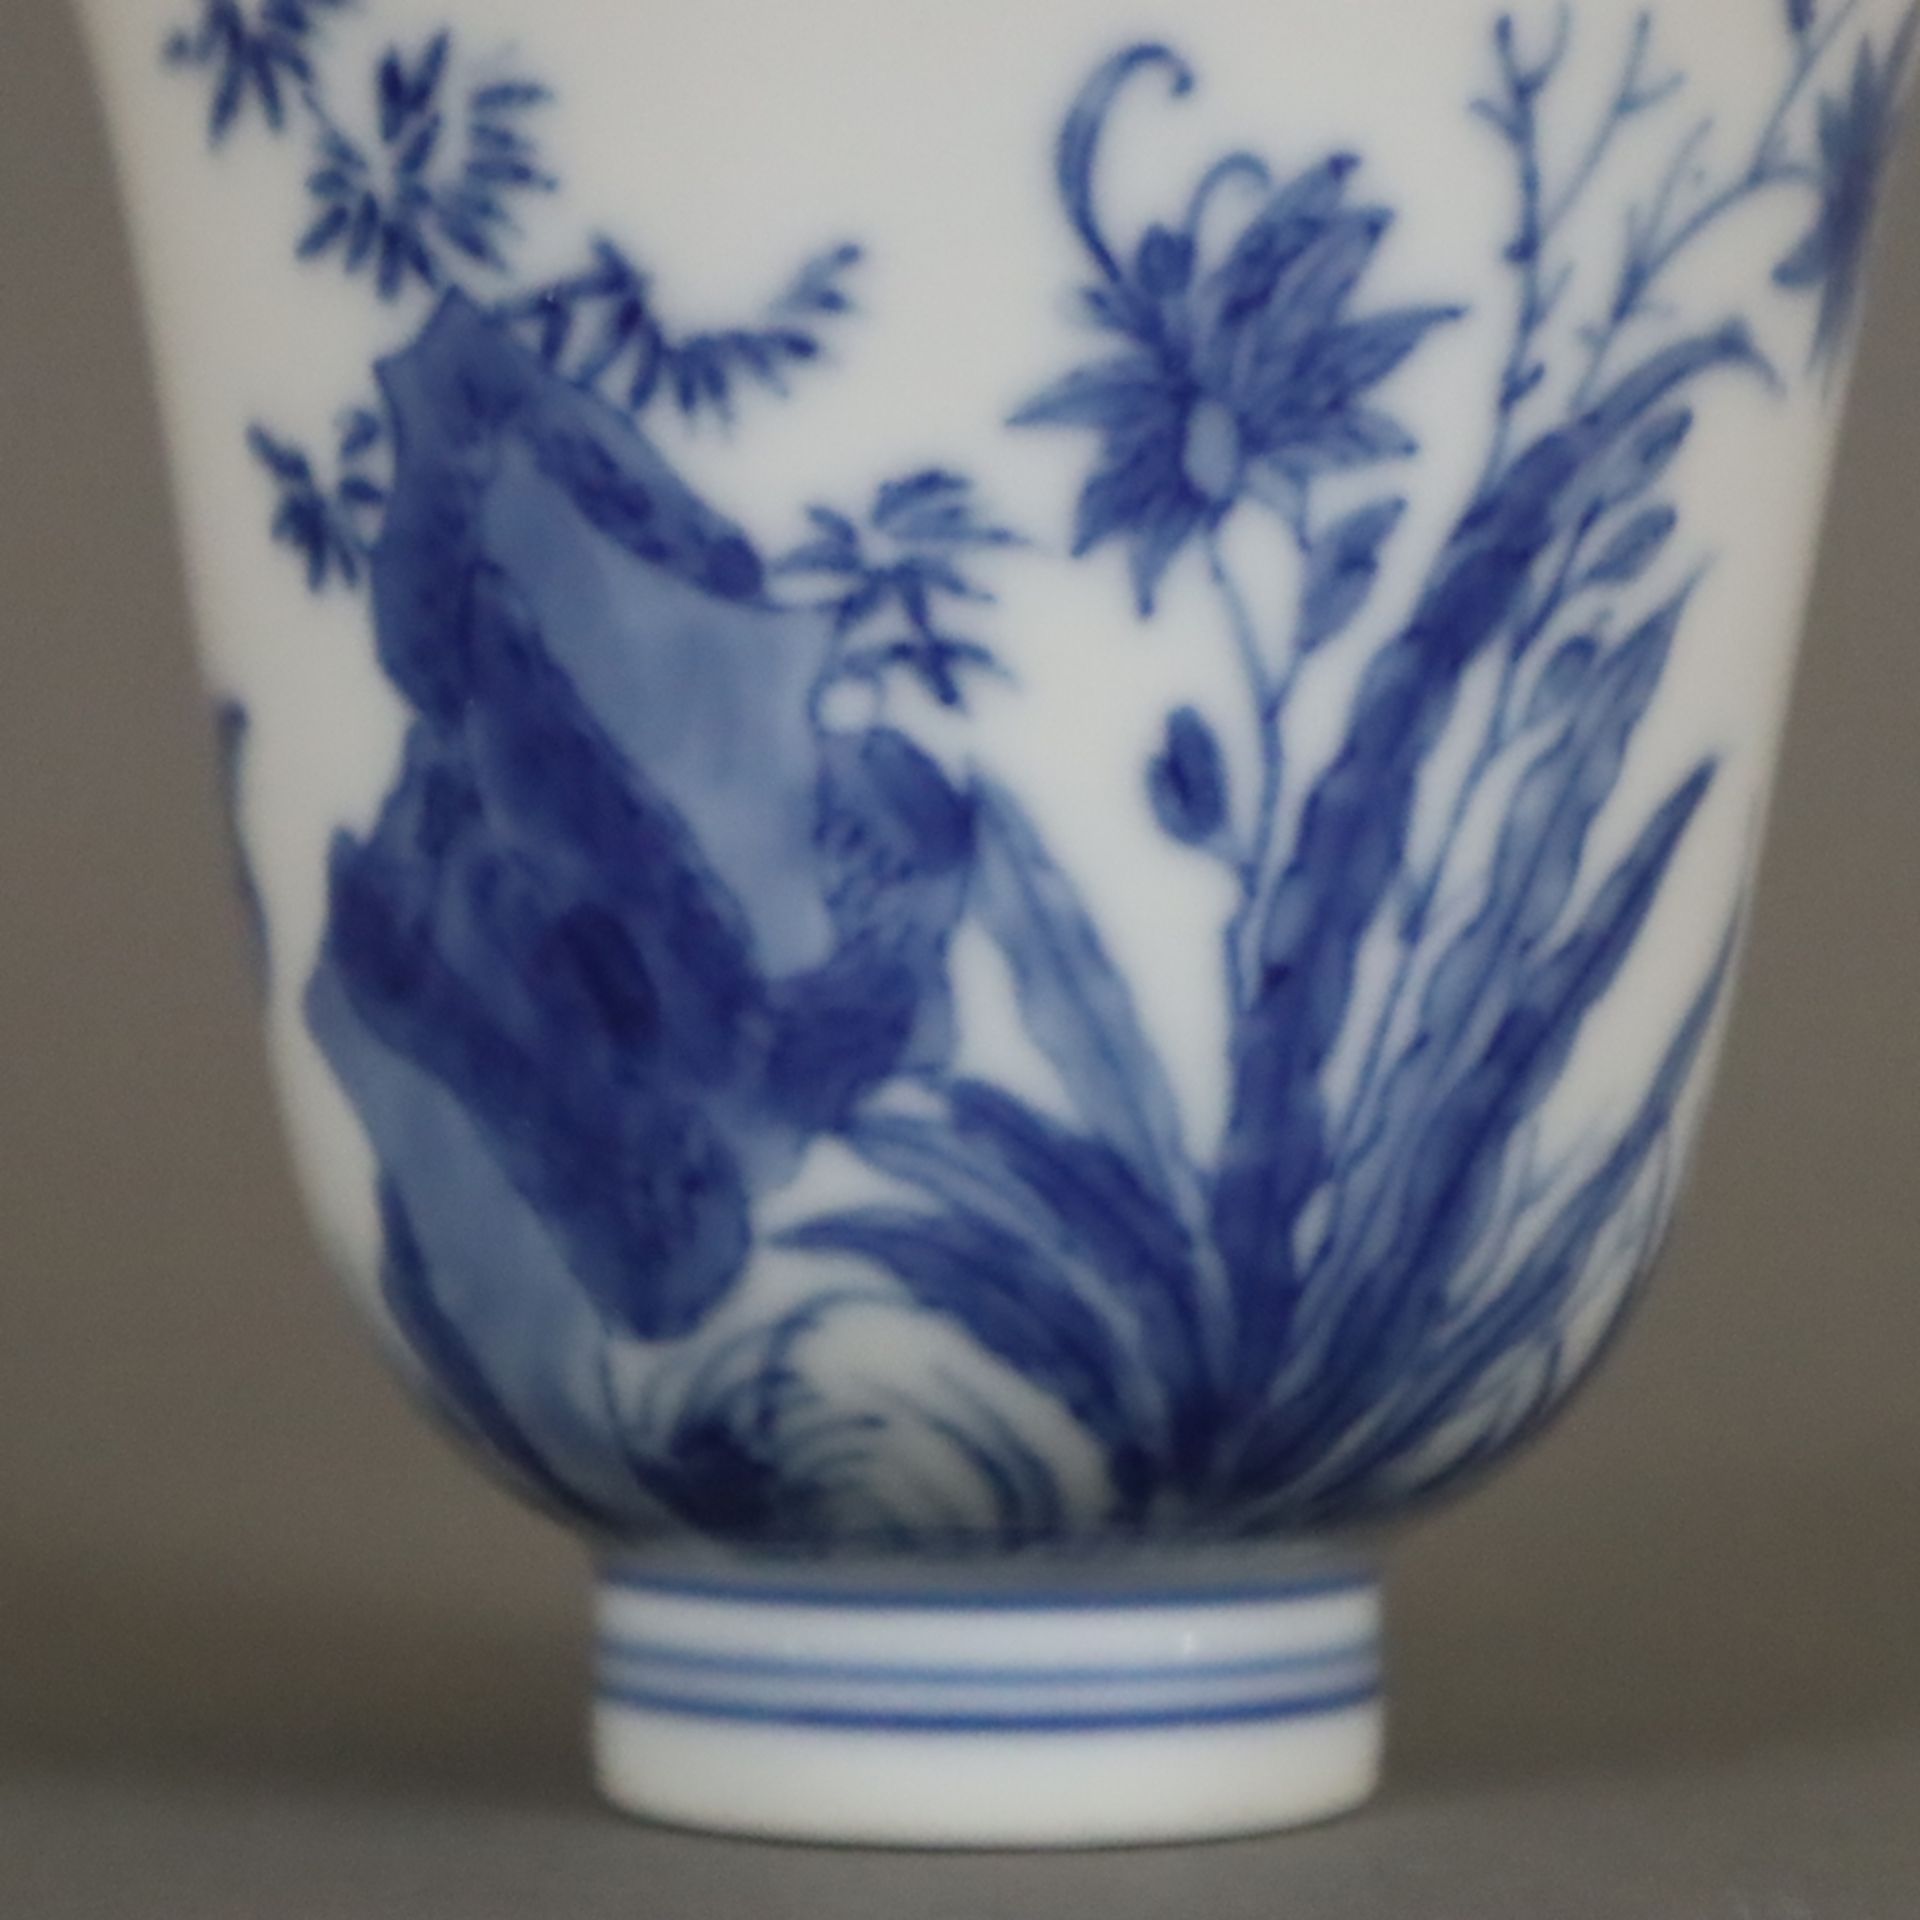 Blau-weißer Porzellanbecher - China, frühes 20.Jh., glockenförmige Kuppa auf schmalem Standring, um - Image 3 of 6